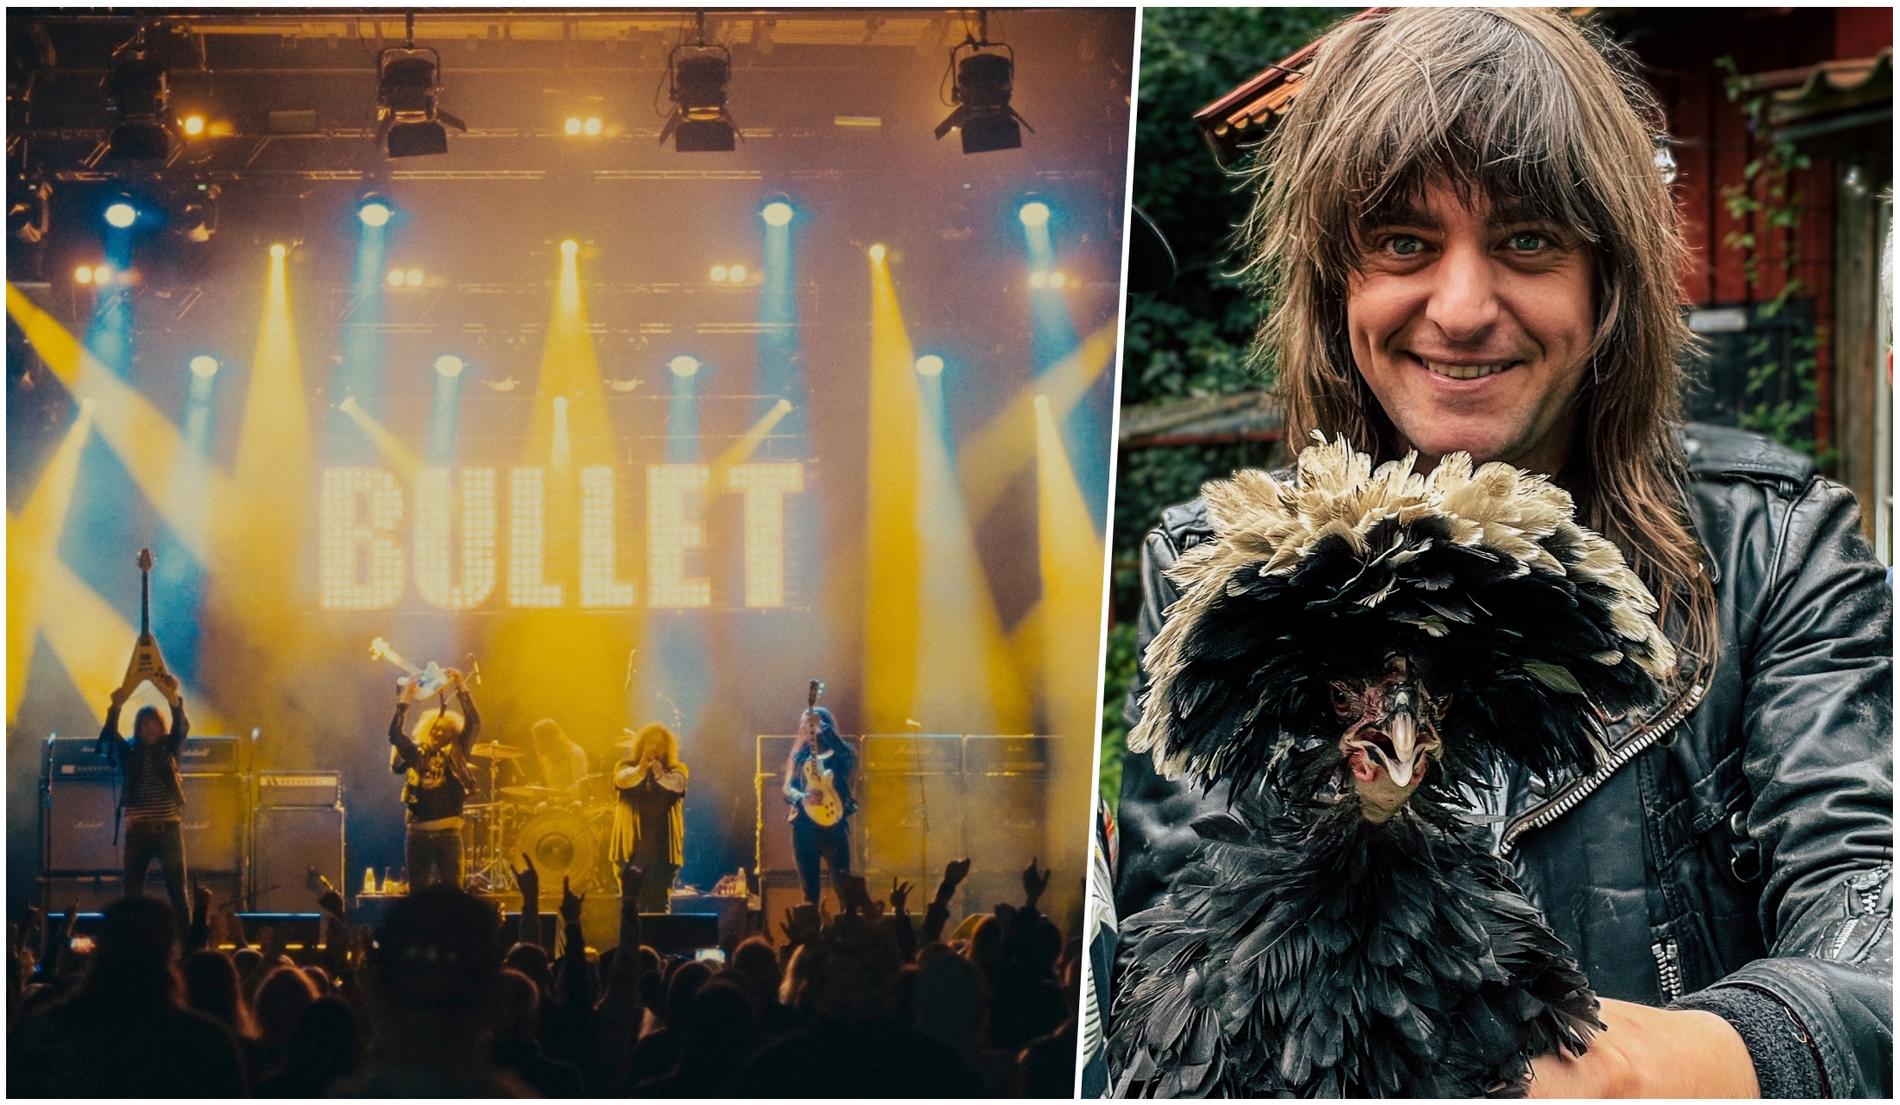 Bullet-gitarristen Hampus Klangs kärlek till hårdrock och hönsuppfödande möts i den charmiga dokumentären ”Party queens”.